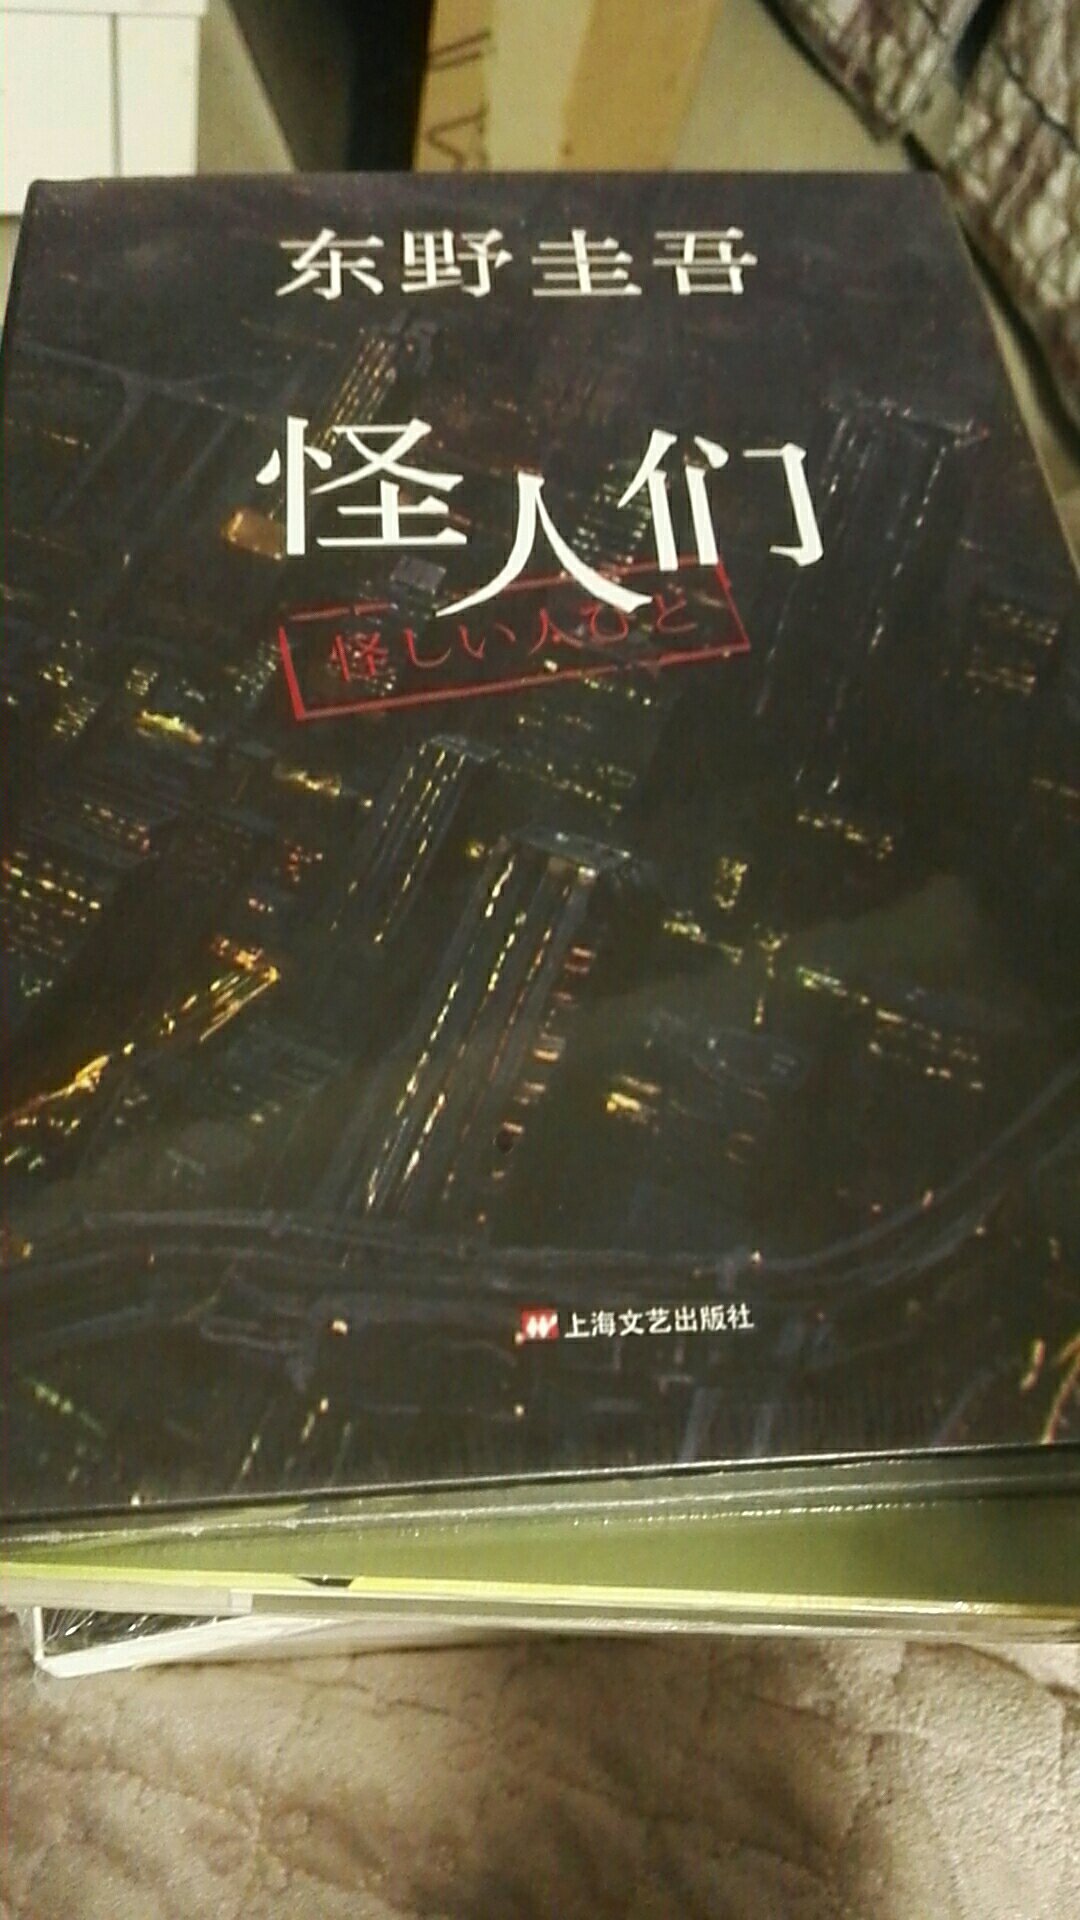 这本书也是东野圭吾的作品，只要是他的作品统统的收集齐全，都好看